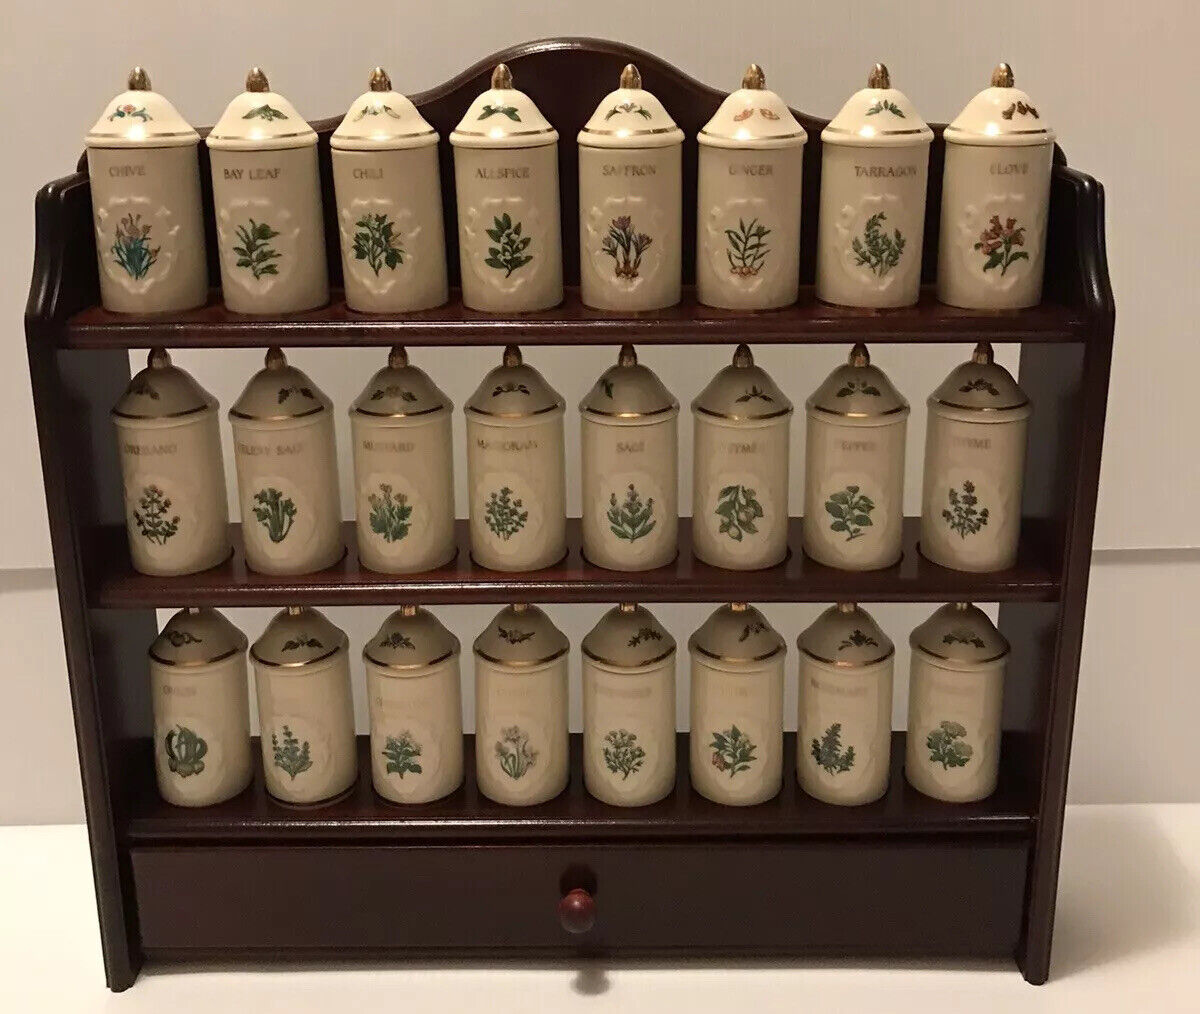 Vintage 1992 Lenox Spice Garden Complete Set - 24 Jars & Rack